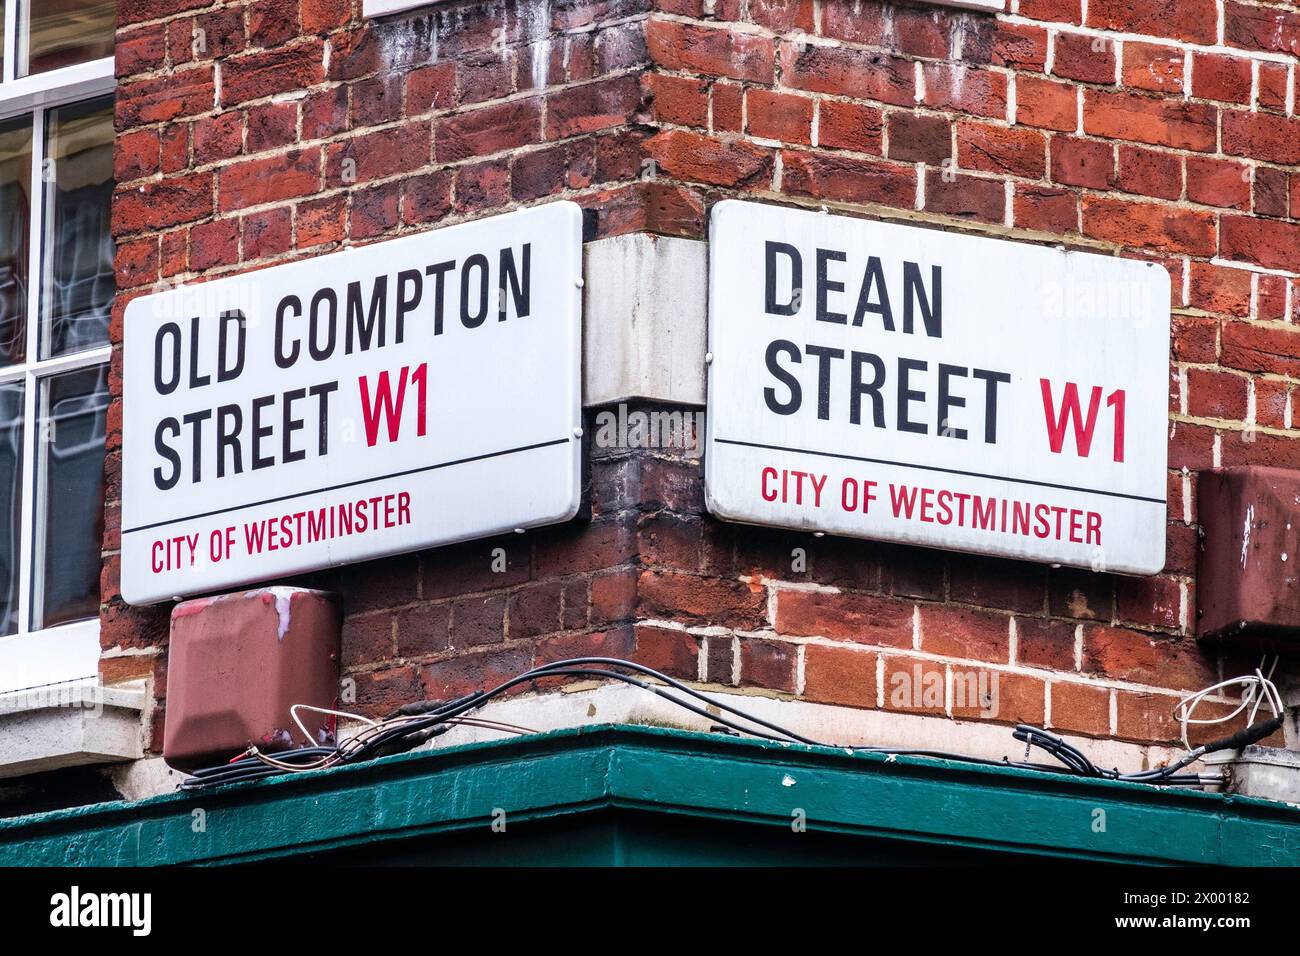 Indicazioni stradali per London: Old Compton Street W1 e Dean Street W1 Foto Stock